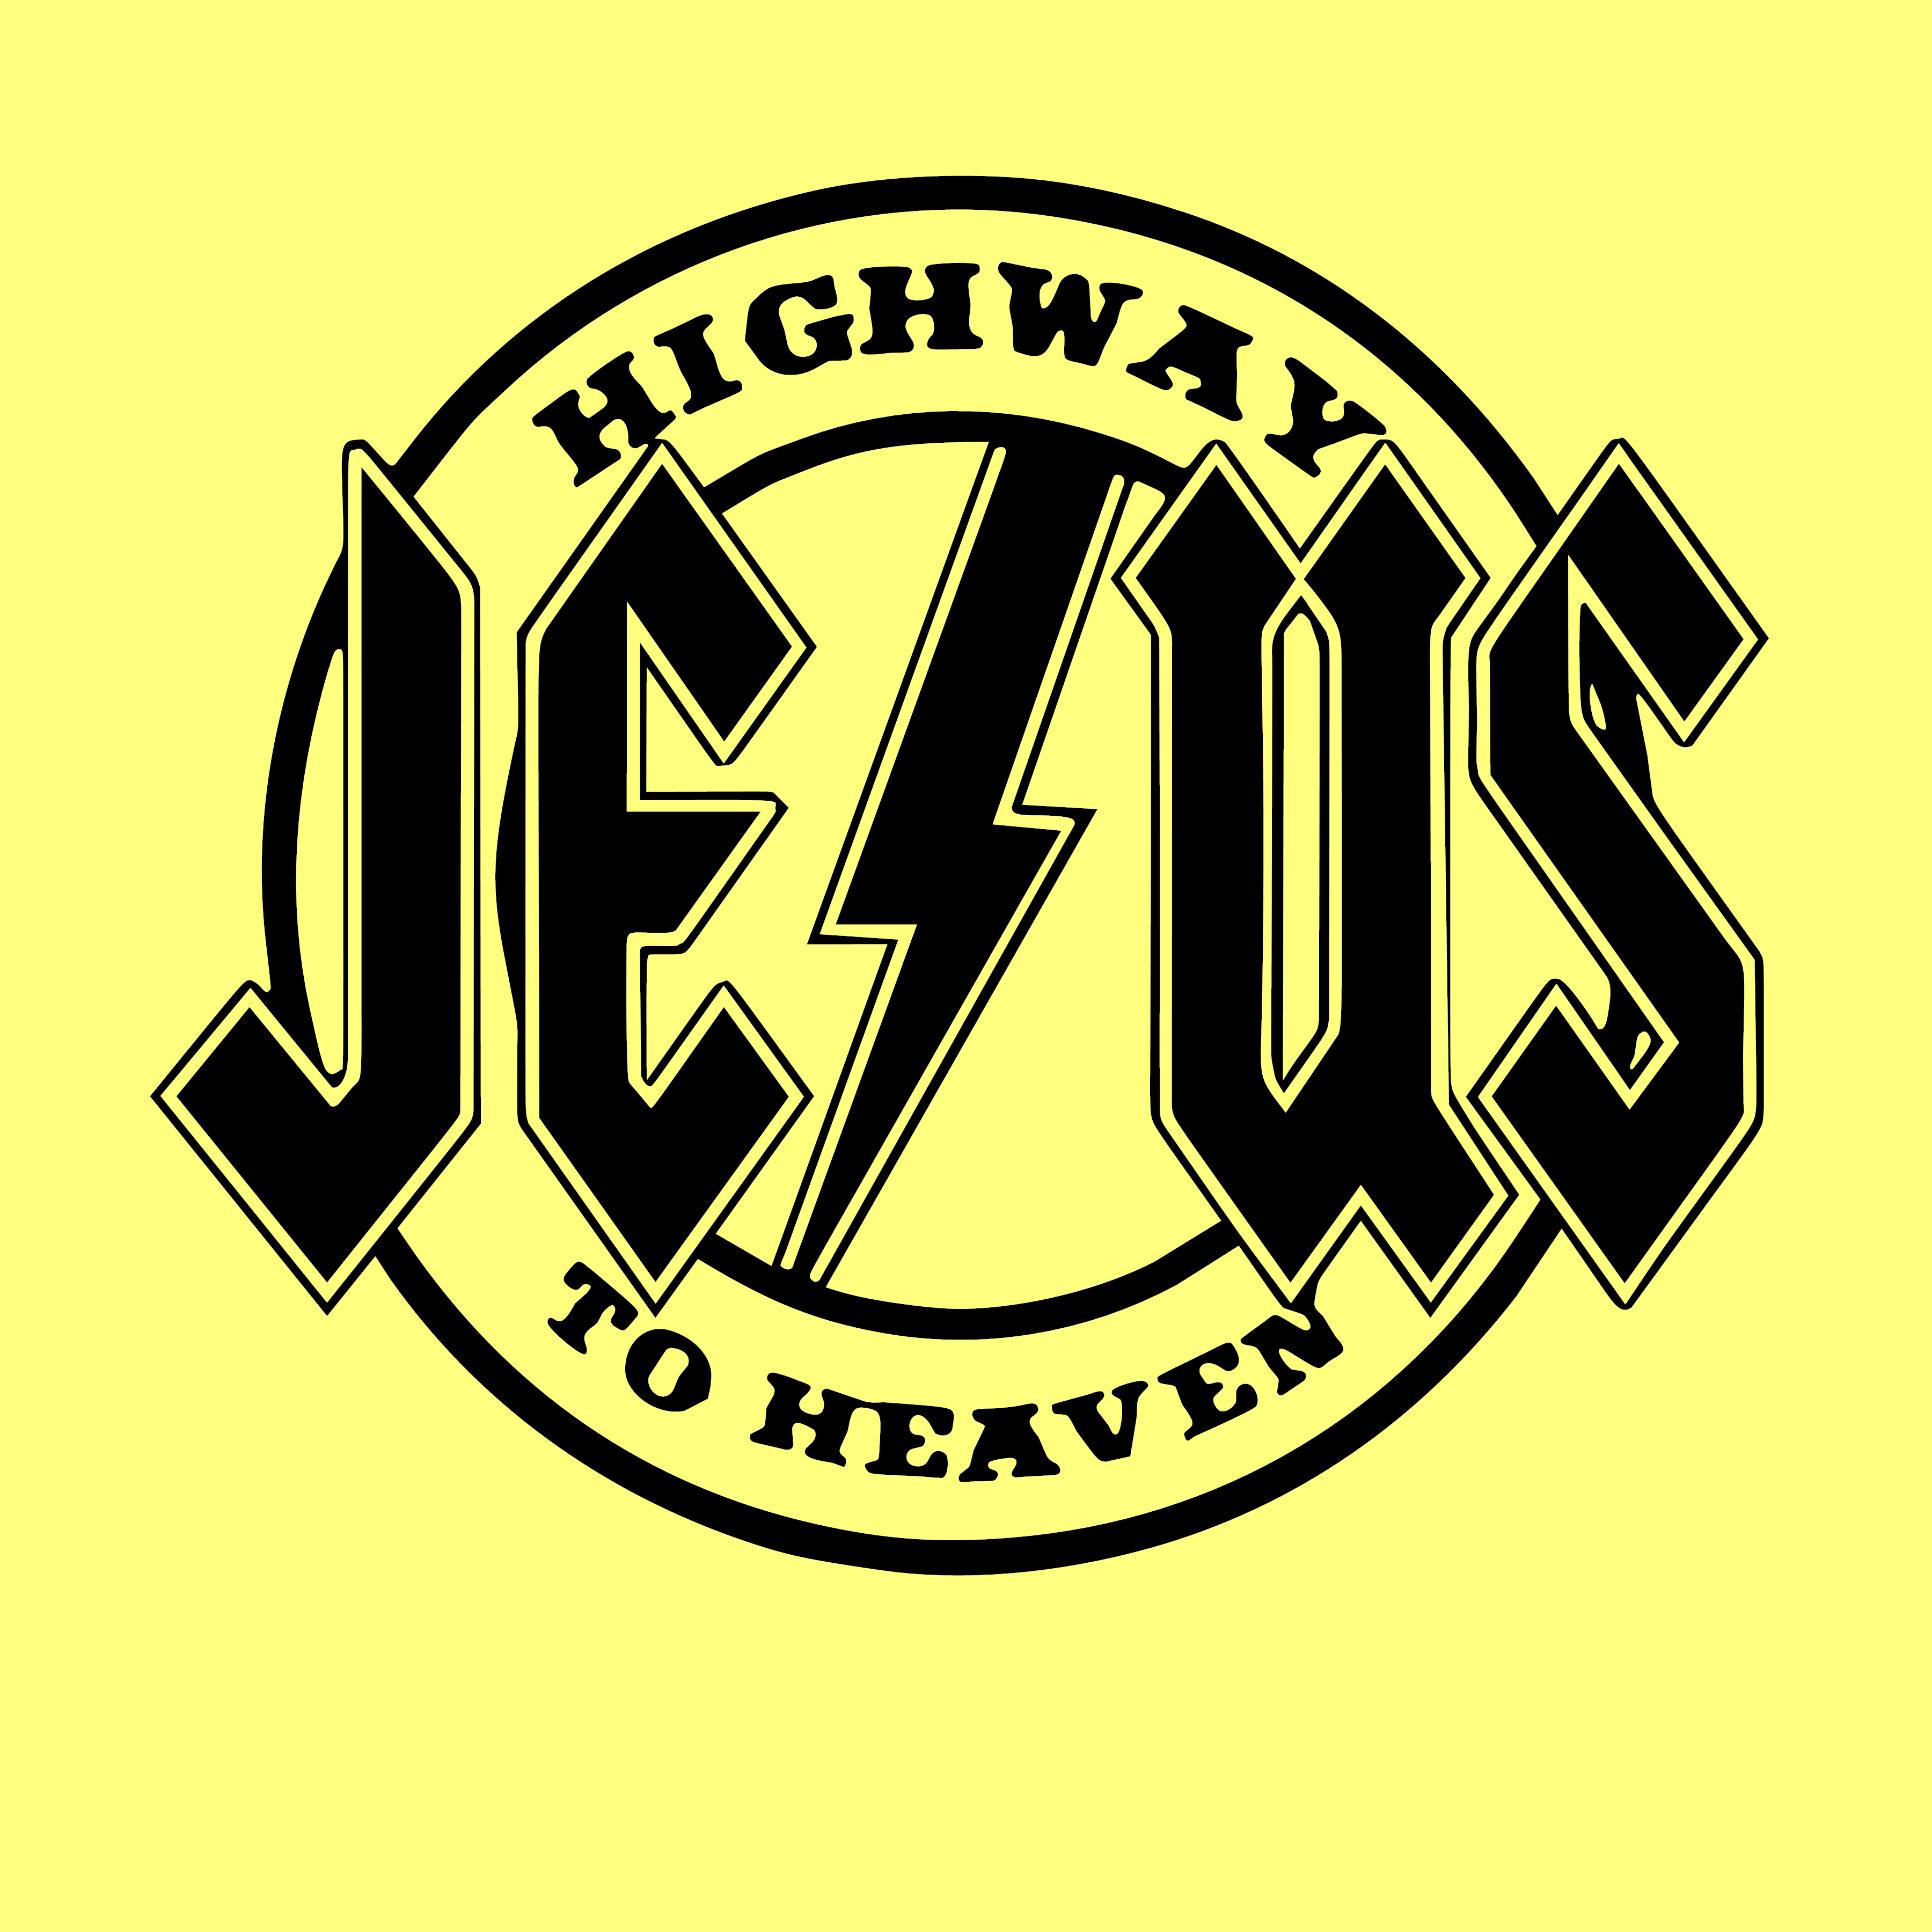 Highway To Heaven